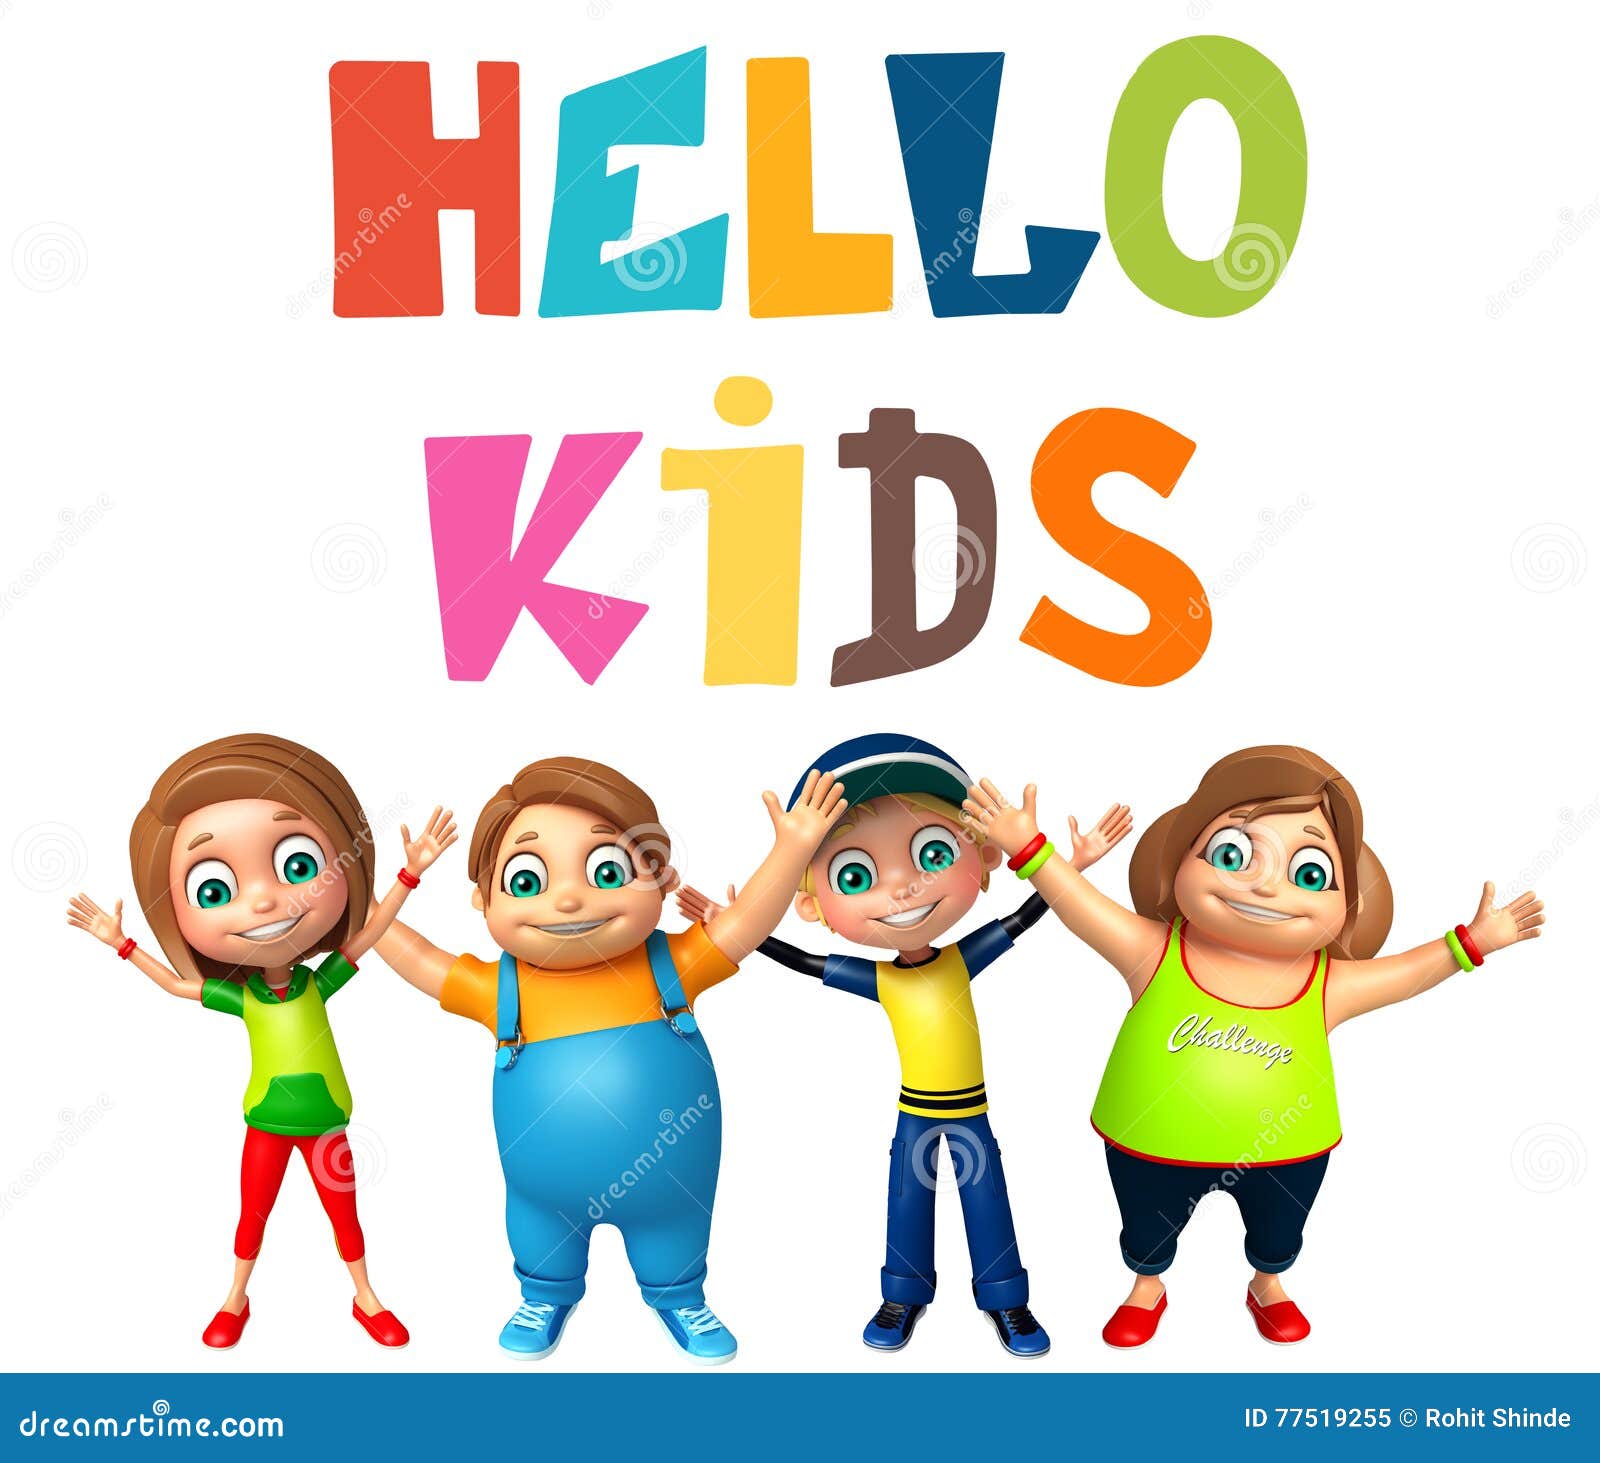 Hello русская версия. Hello Kids. Hello для детей. Hello children картинка. Картинка для детей hello friends.